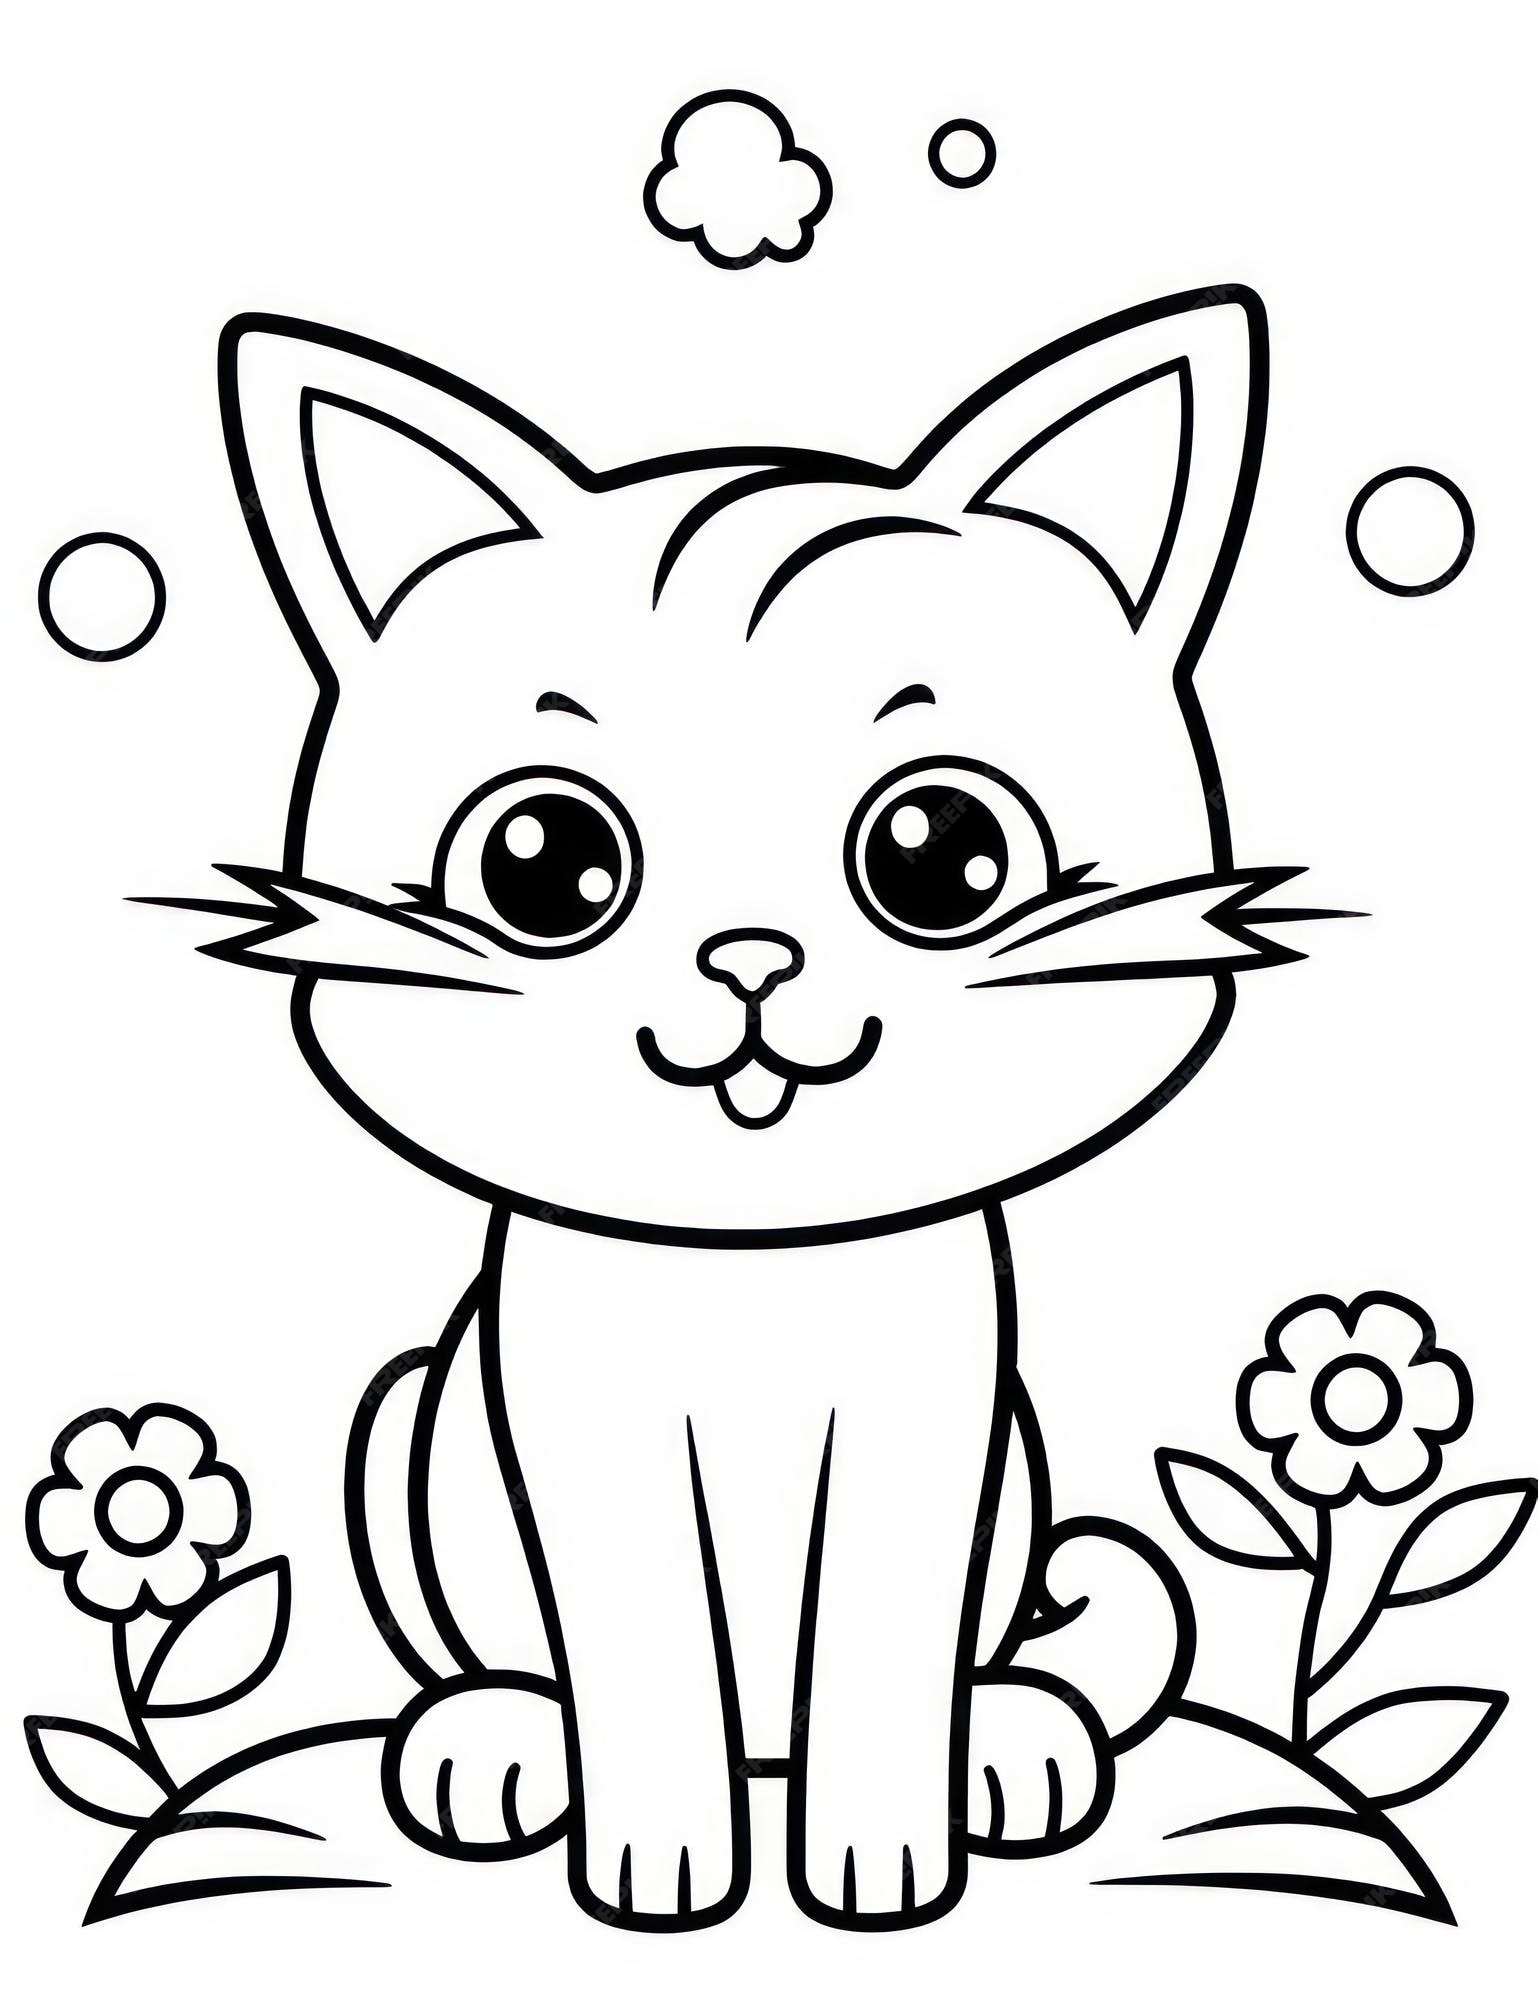 Desenholândia: Desenhos de gatos para colorir pintar - Desenho de